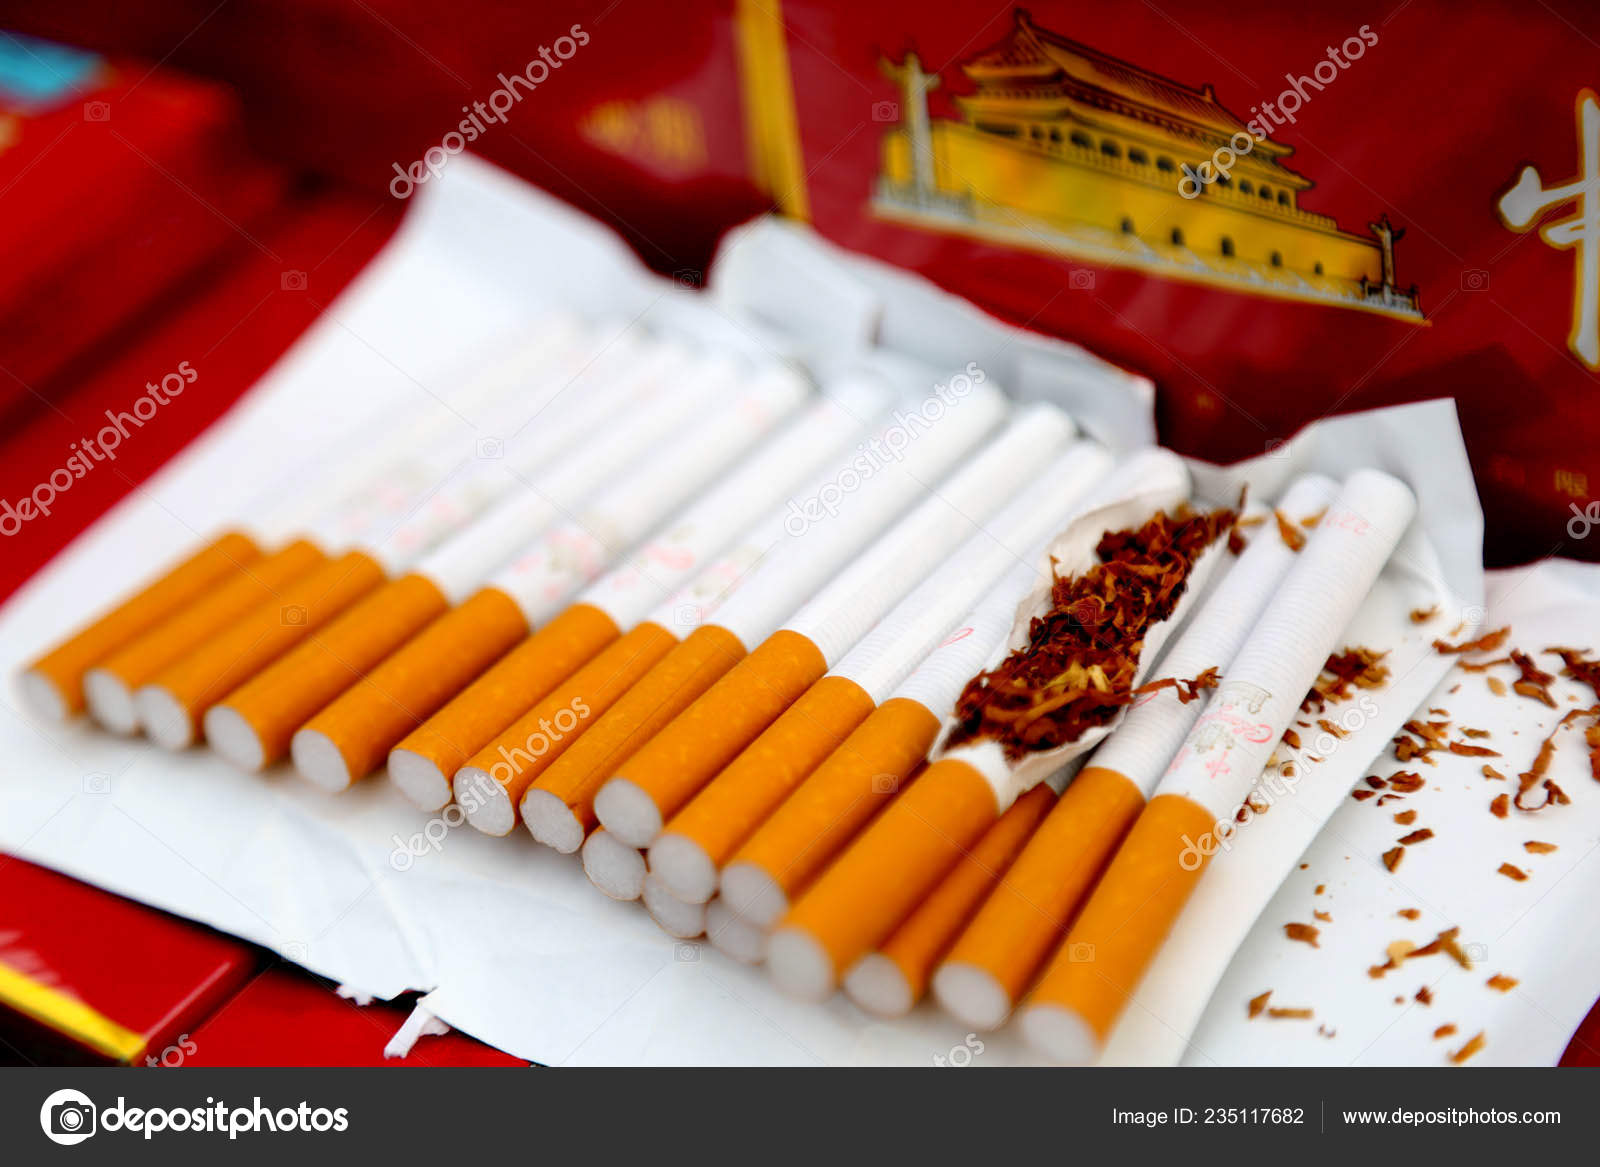 https://st4.depositphotos.com/21607914/23511/i/1600/depositphotos_235117682-stock-photo-view-fake-cigarettes-seized-police.jpg